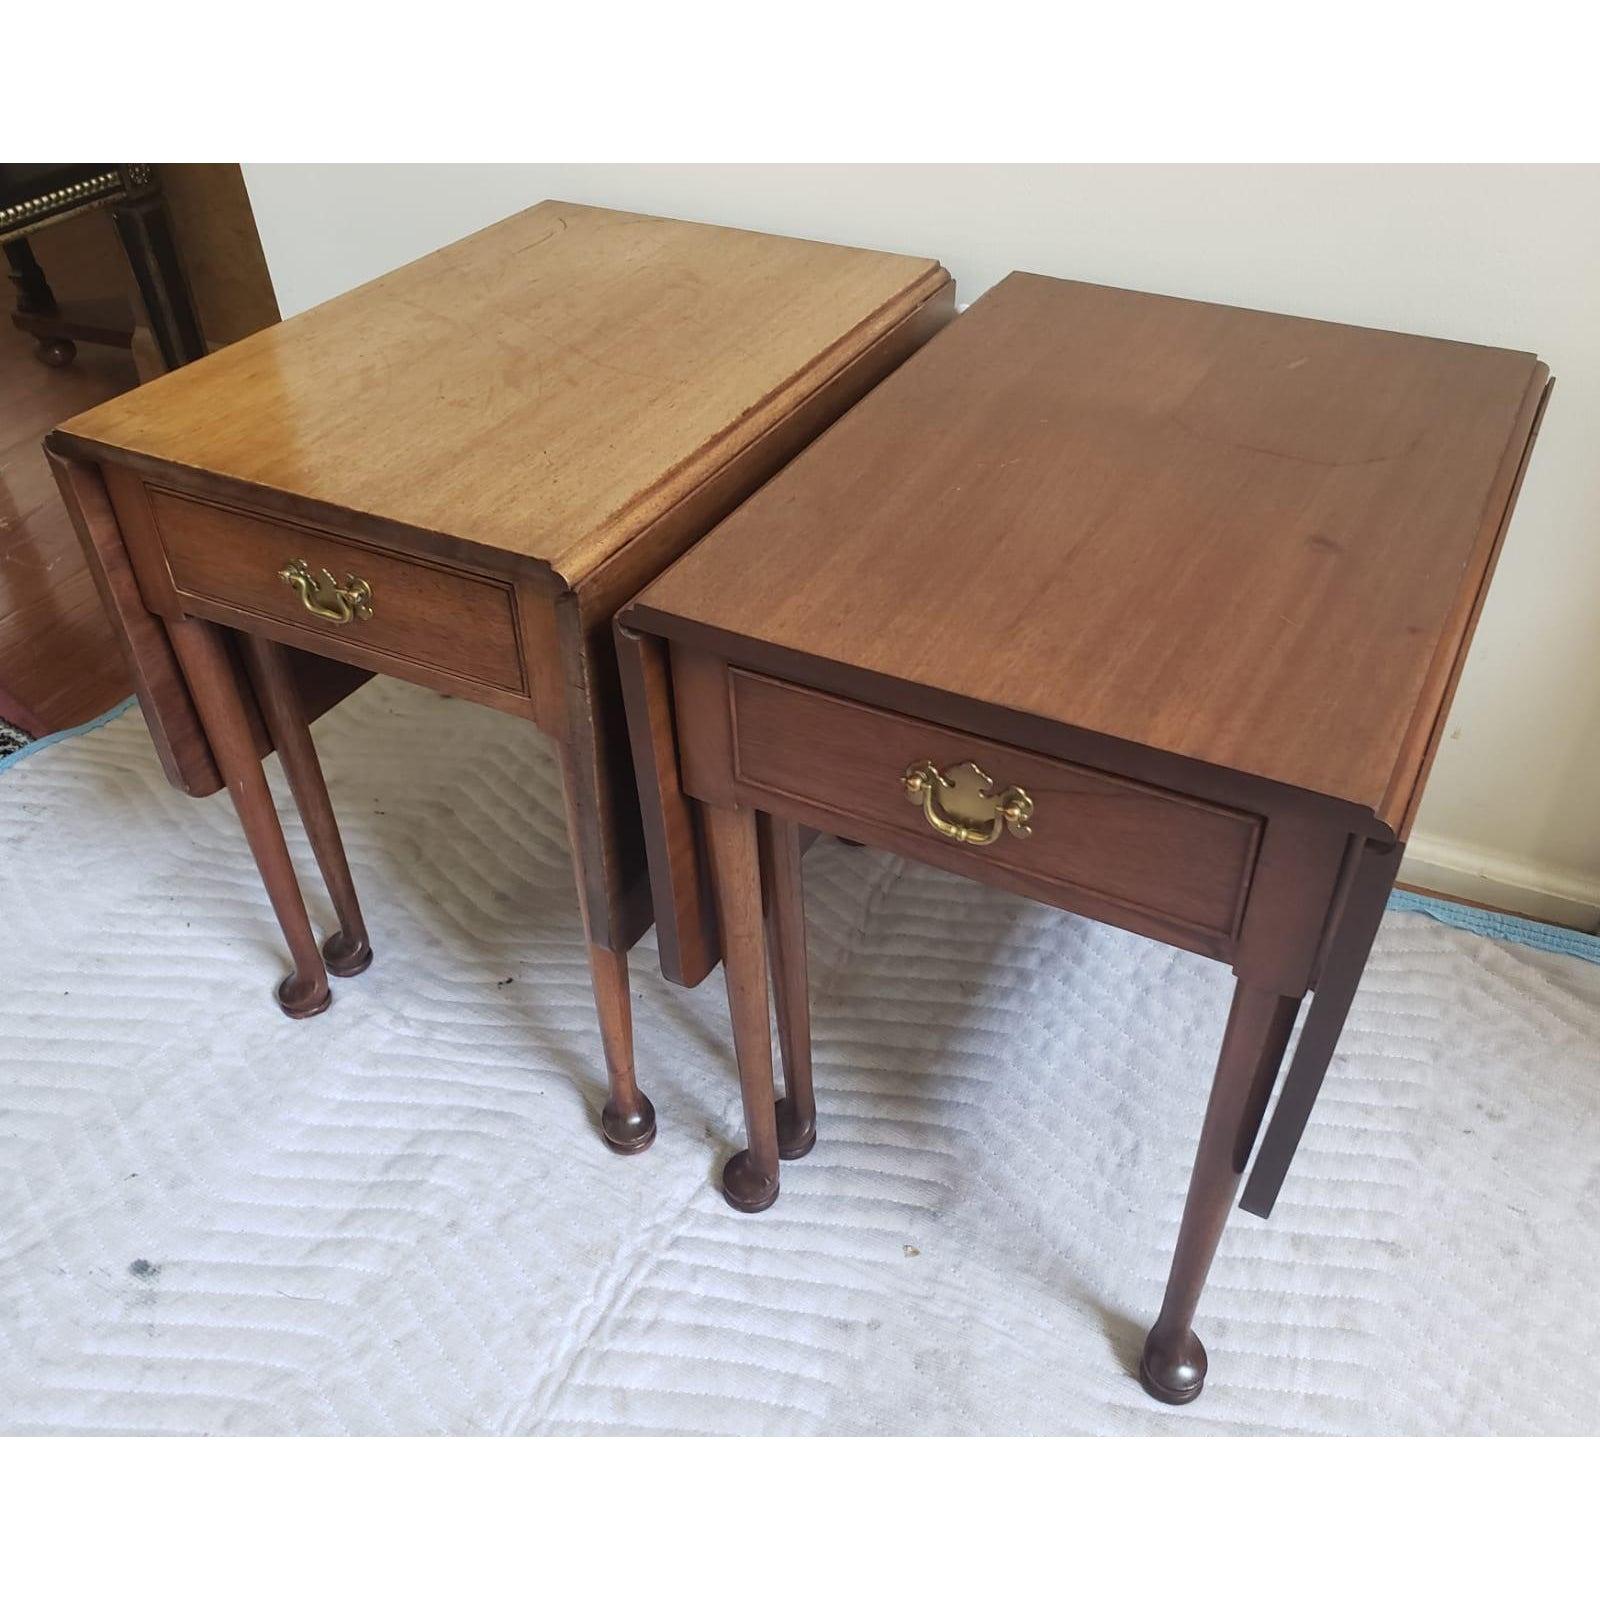 Biggs Richmond, eine Abteilung der berühmten Kittinger Möbel, Paar Chippendale Mahagoni kleine Klapptisch Pembroke Tisch. Die Tische sind in einem ausgezeichneten strukturellen Zustand mit einigen Lackschäden. Keine offensichtlichen Kratzer.
Der